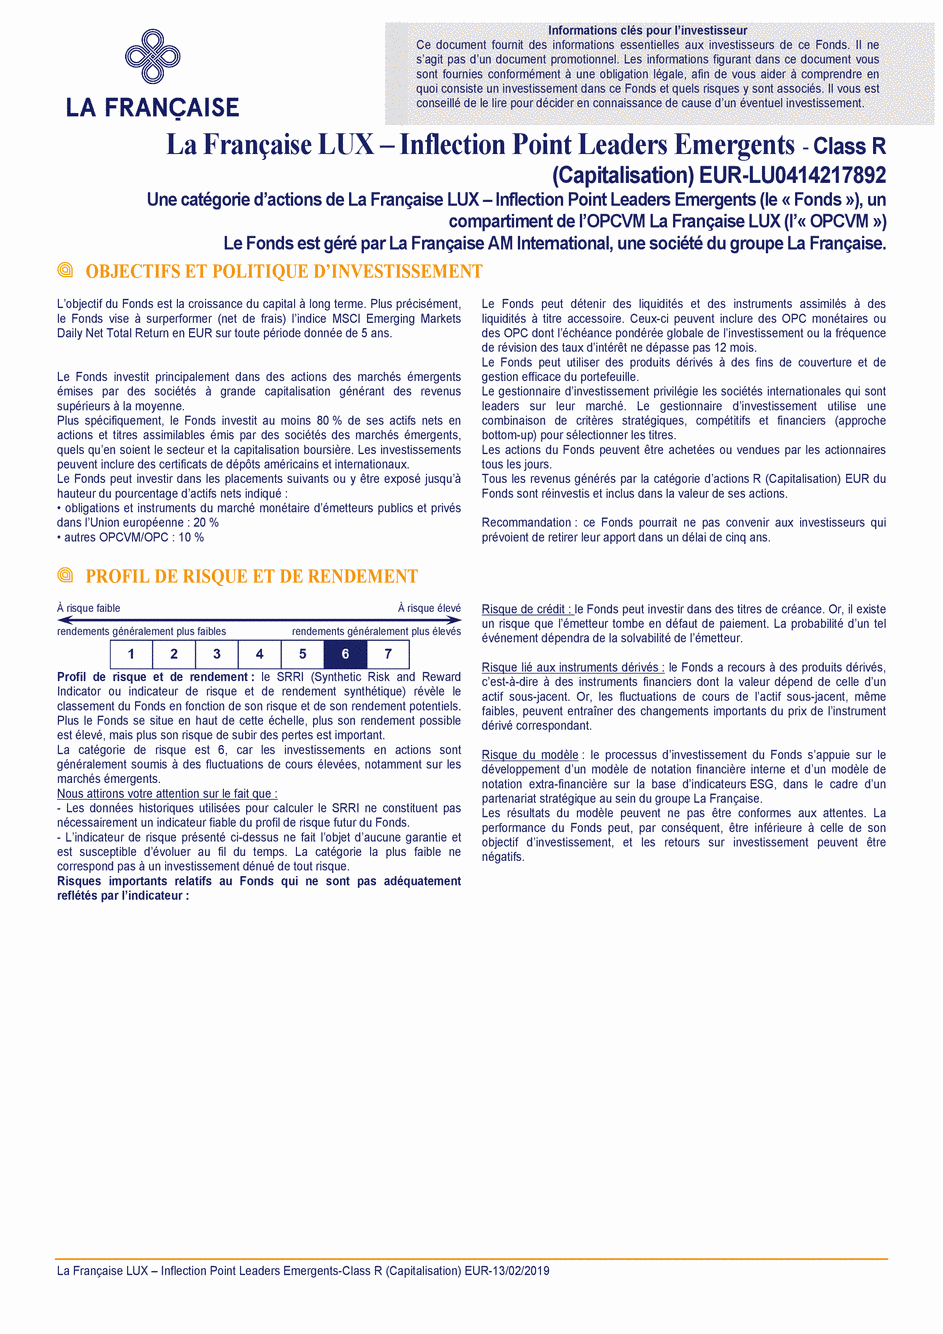 DICI La Française LUX - Inflection Point Leaders Emergents - R (C) EUR - 13/02/2019 - Français